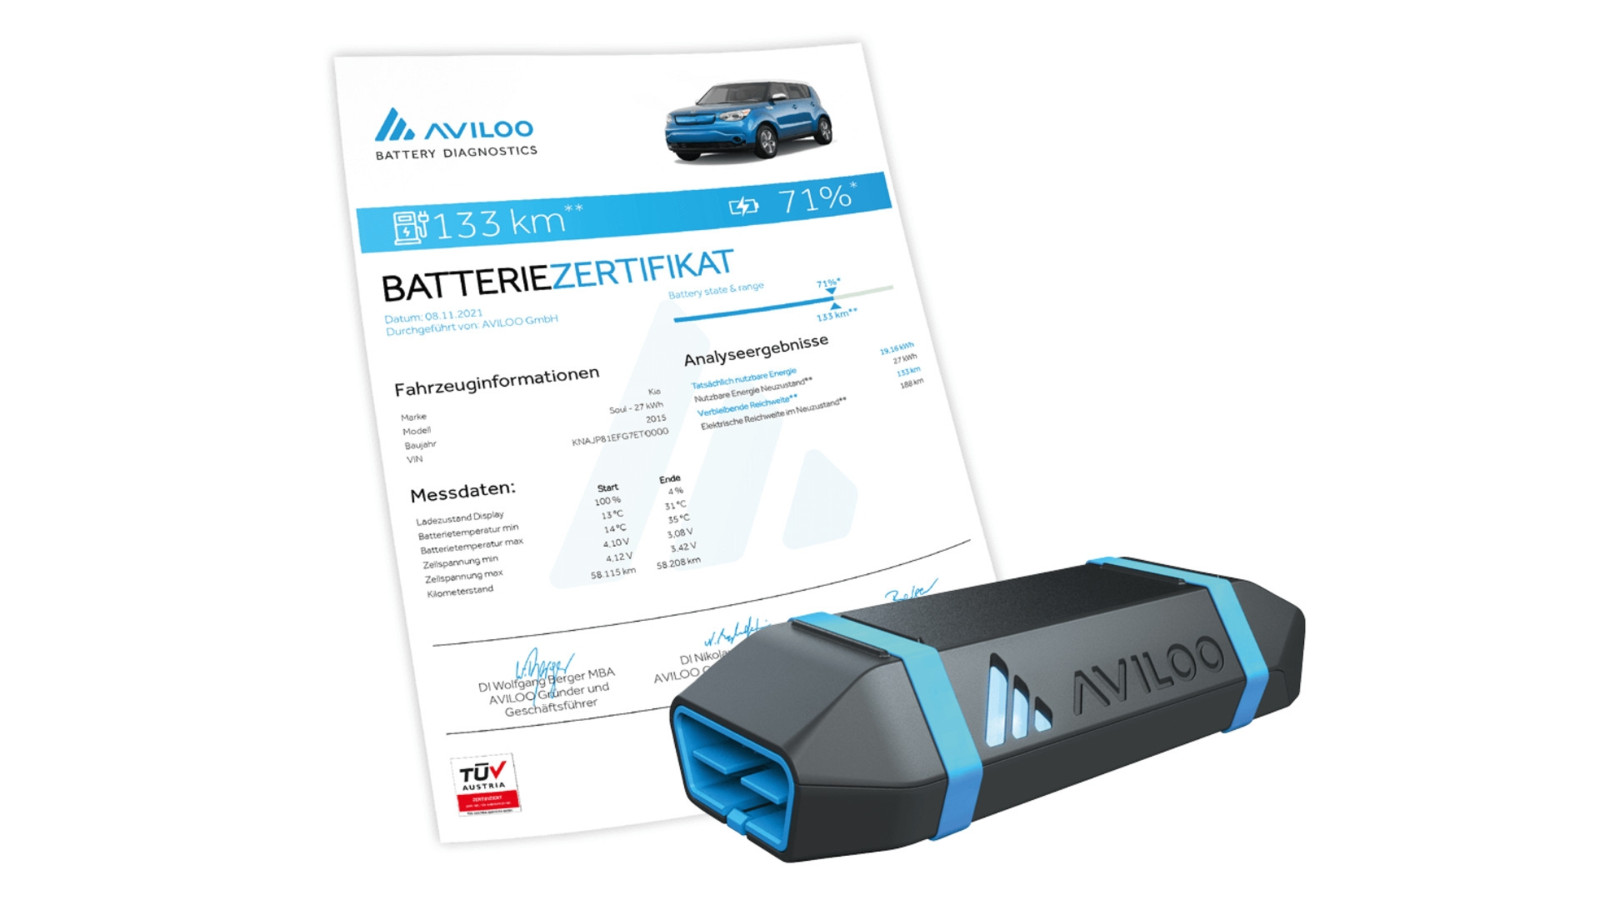 Nach dem Test mit dem Aviloo-System erhält der Fahrzeugbesitzer ein Zertifikat mit dem Prüfergebnis. Der Zustand der Batterie wird in einer Prozentzahl dargestellt. 